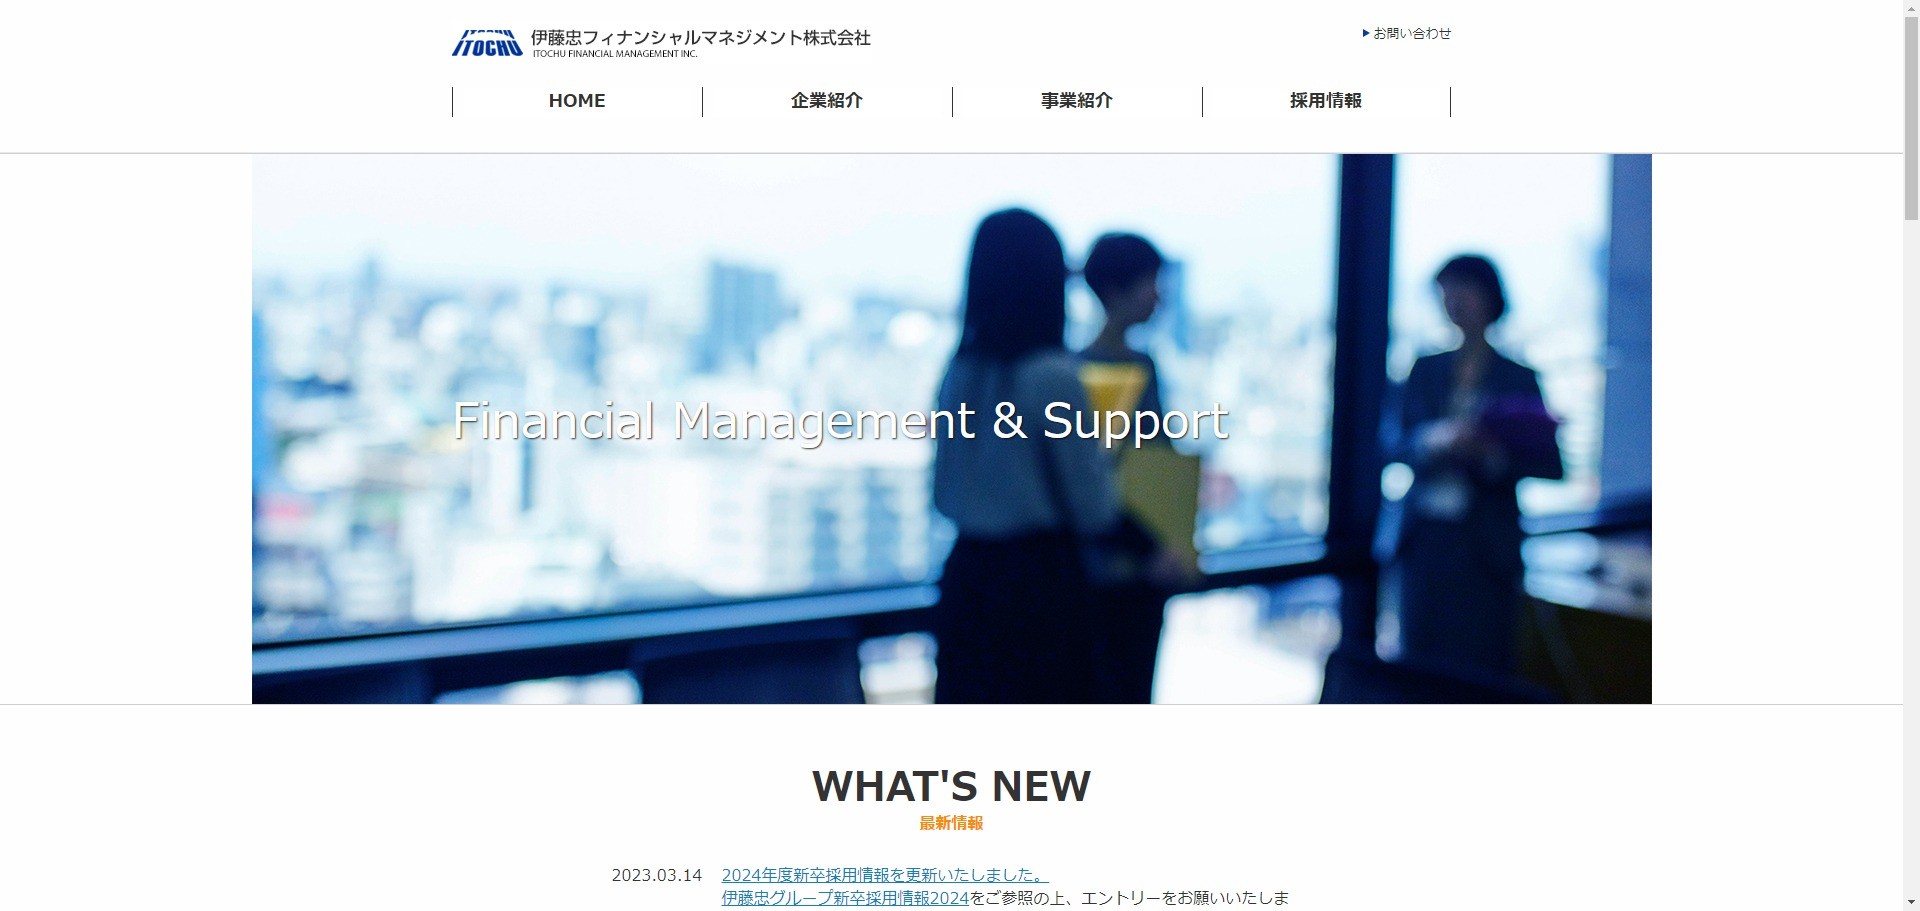 伊藤忠フィナンシャルマネジメント株式会社の業務システム開発